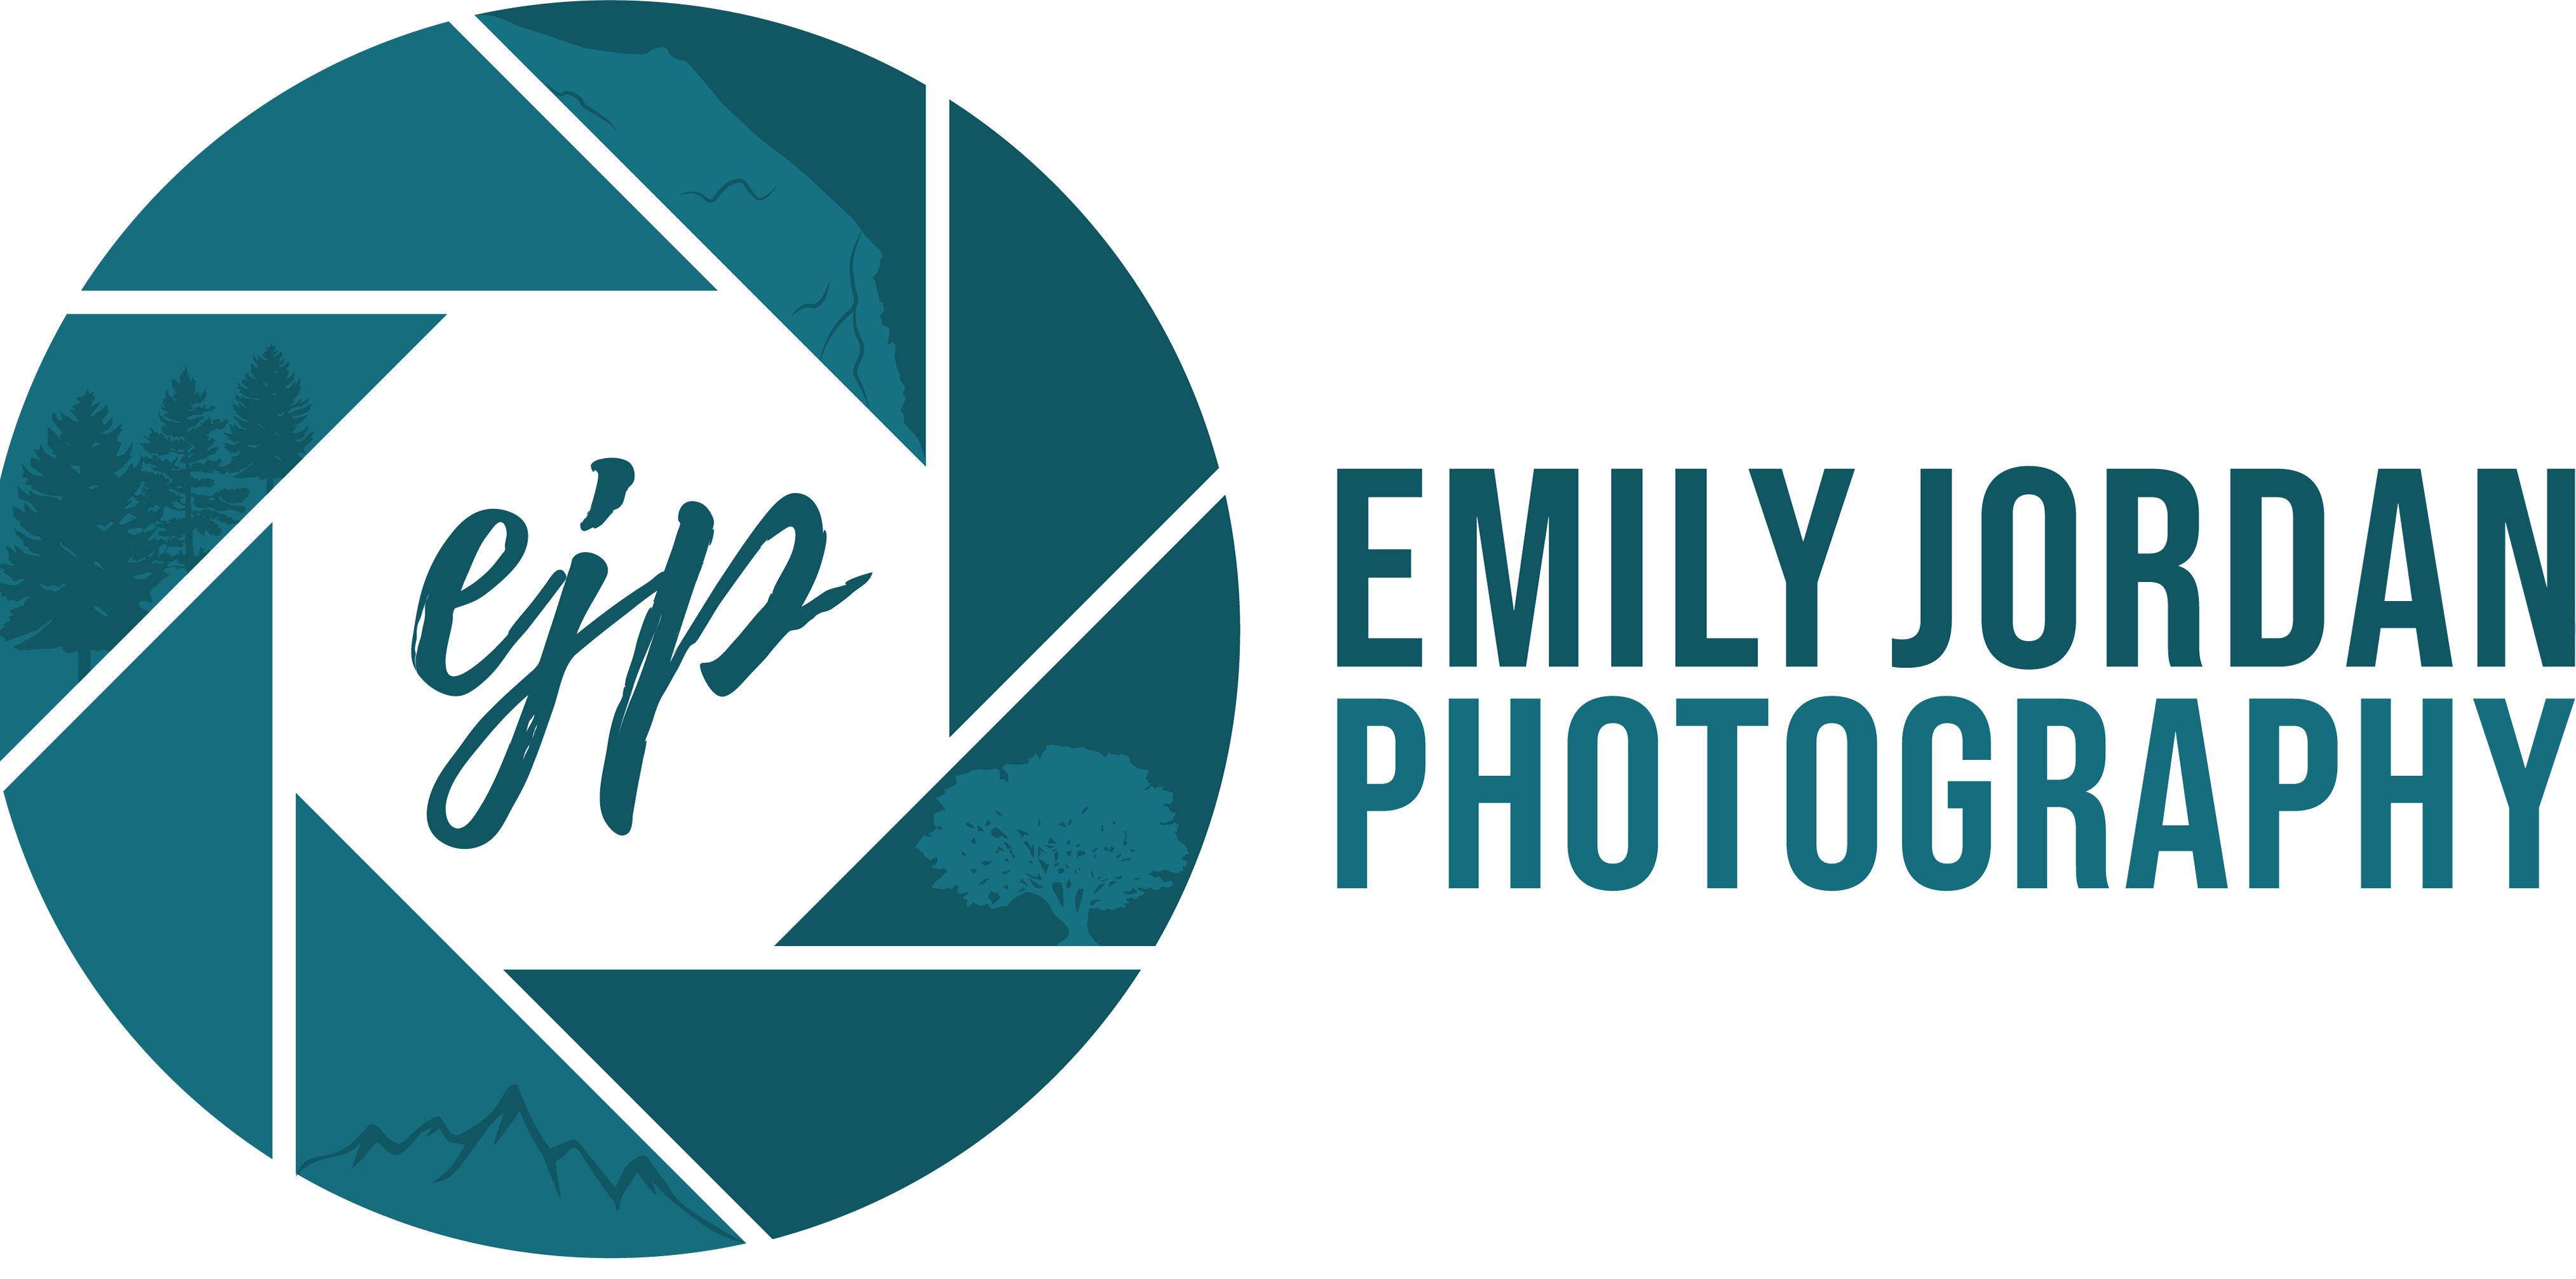 Emily Proctor